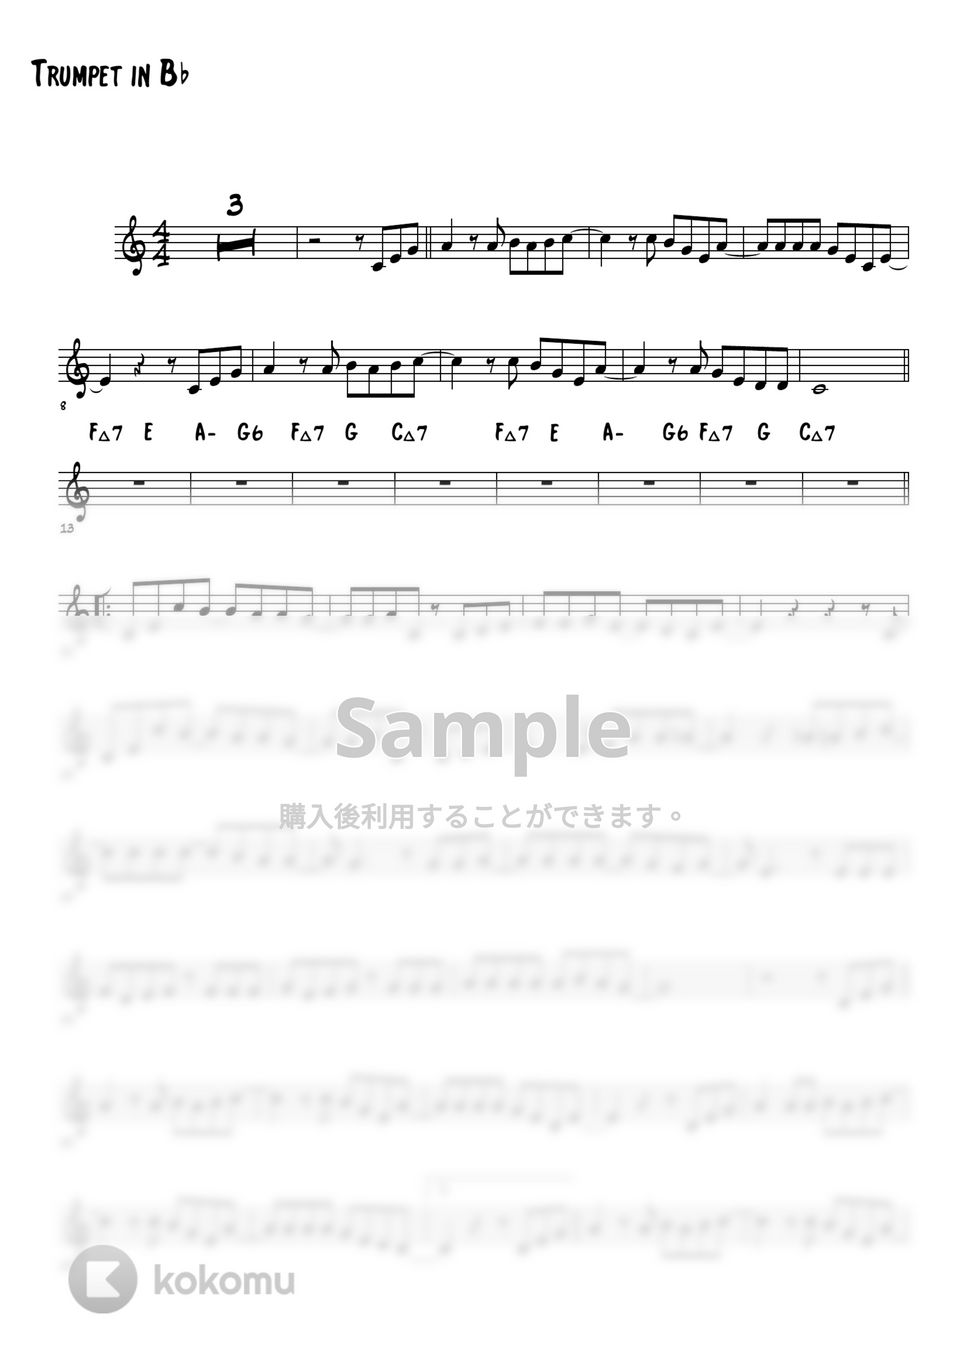 SMAP/スガシカオ - 夜空ノムコウ (トランペットメロディー楽譜) by 高田将利